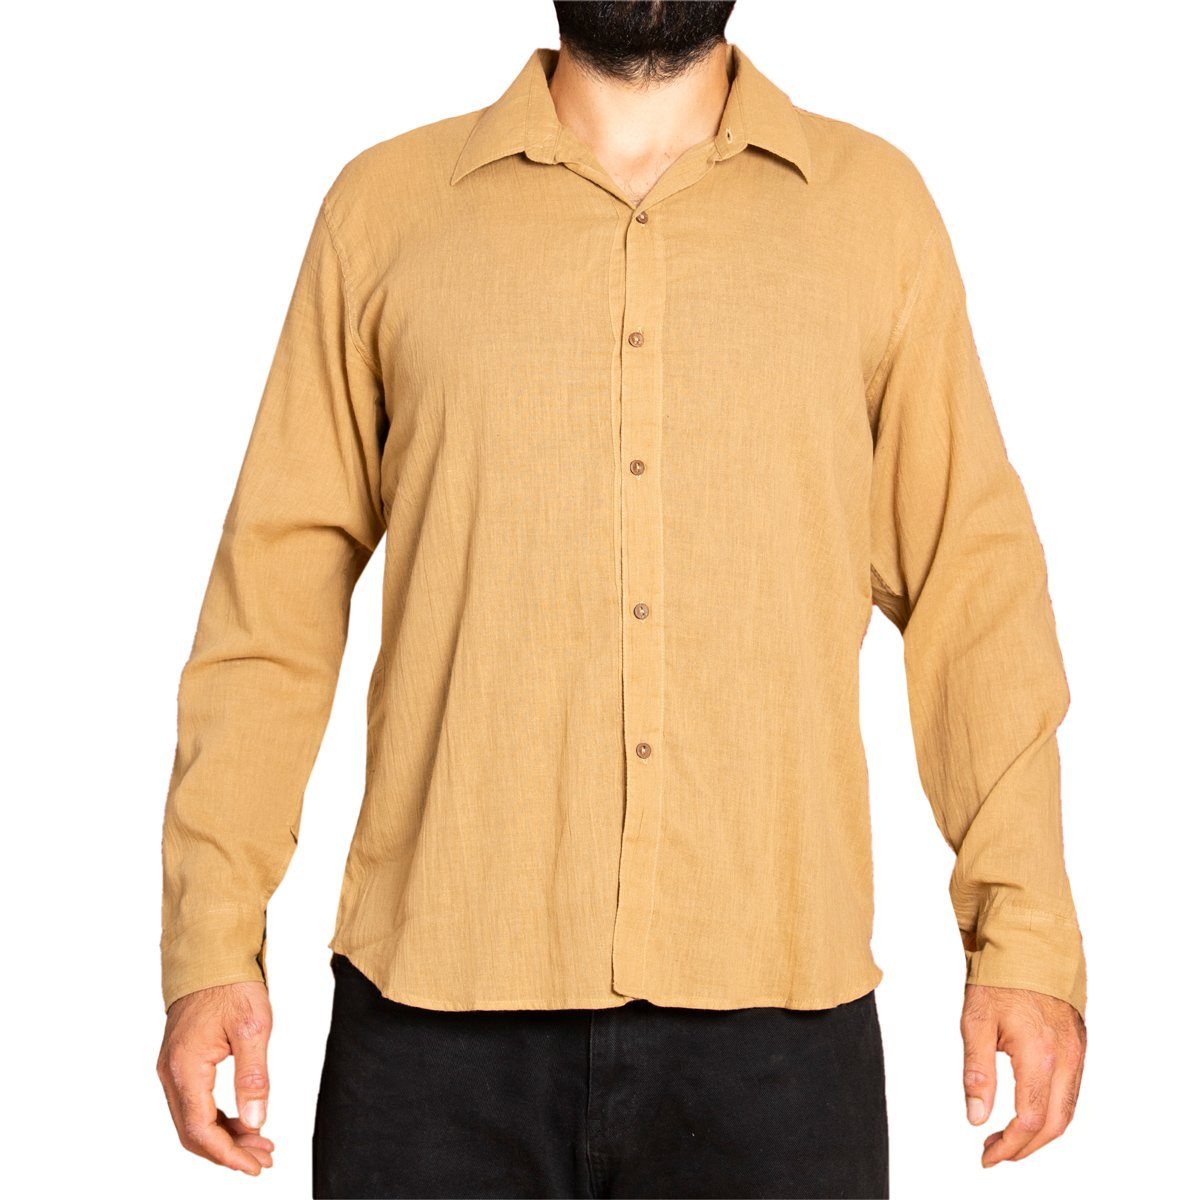 PANASIAM Kurzarmhemd Unisex Sommerhemd mit Kragen aus weicher reiner Baumwolle Freizeithemd für Sie & Ihn mit Holzknöpfen Wohlfühlhemd